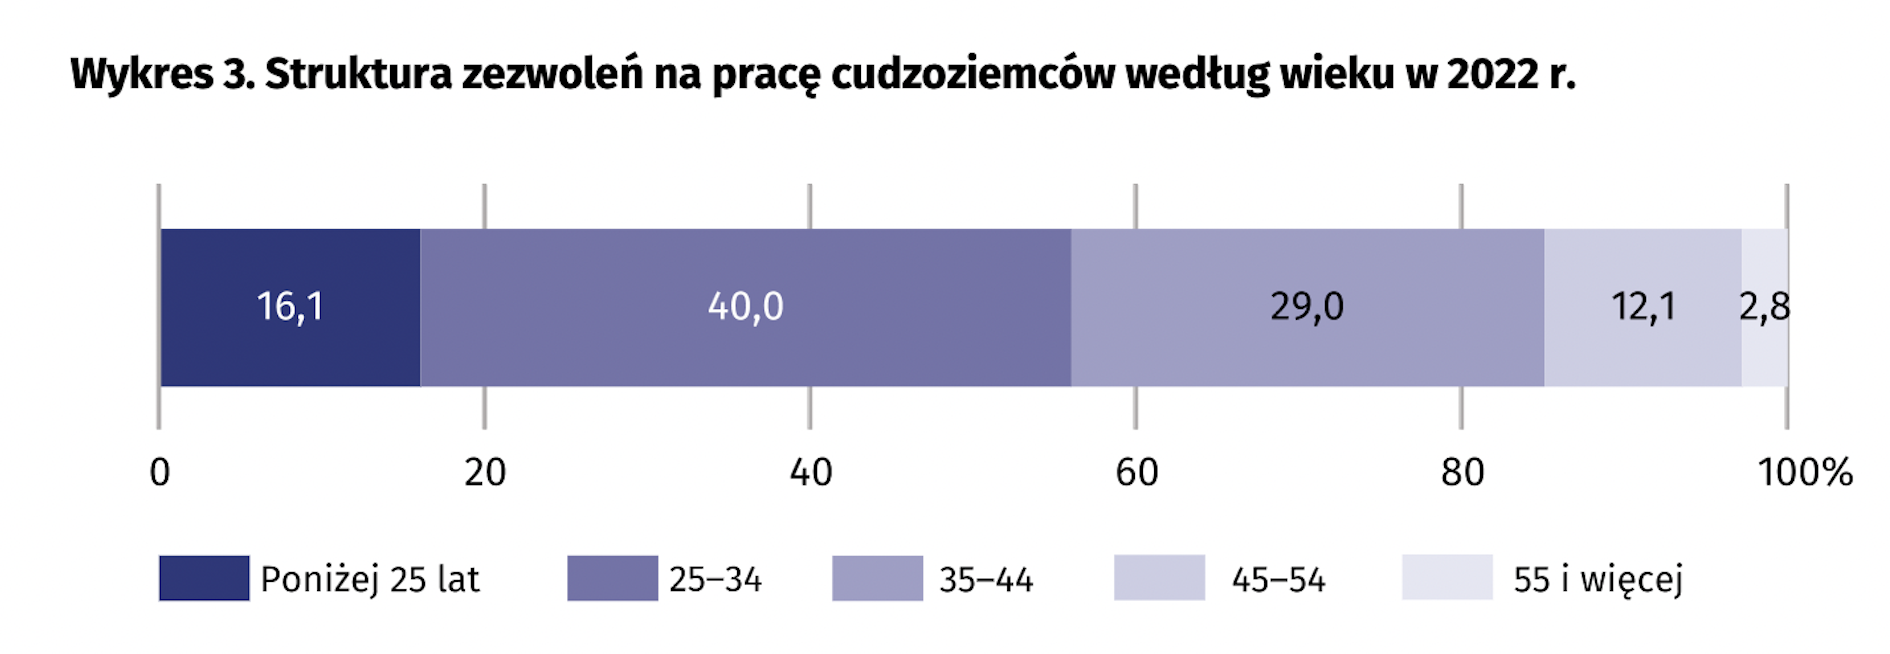 Struktura zezwoleń na pracę cudzoziemców na Mazowszu według wieku w 2022 r. (Źródło: dane GUS).